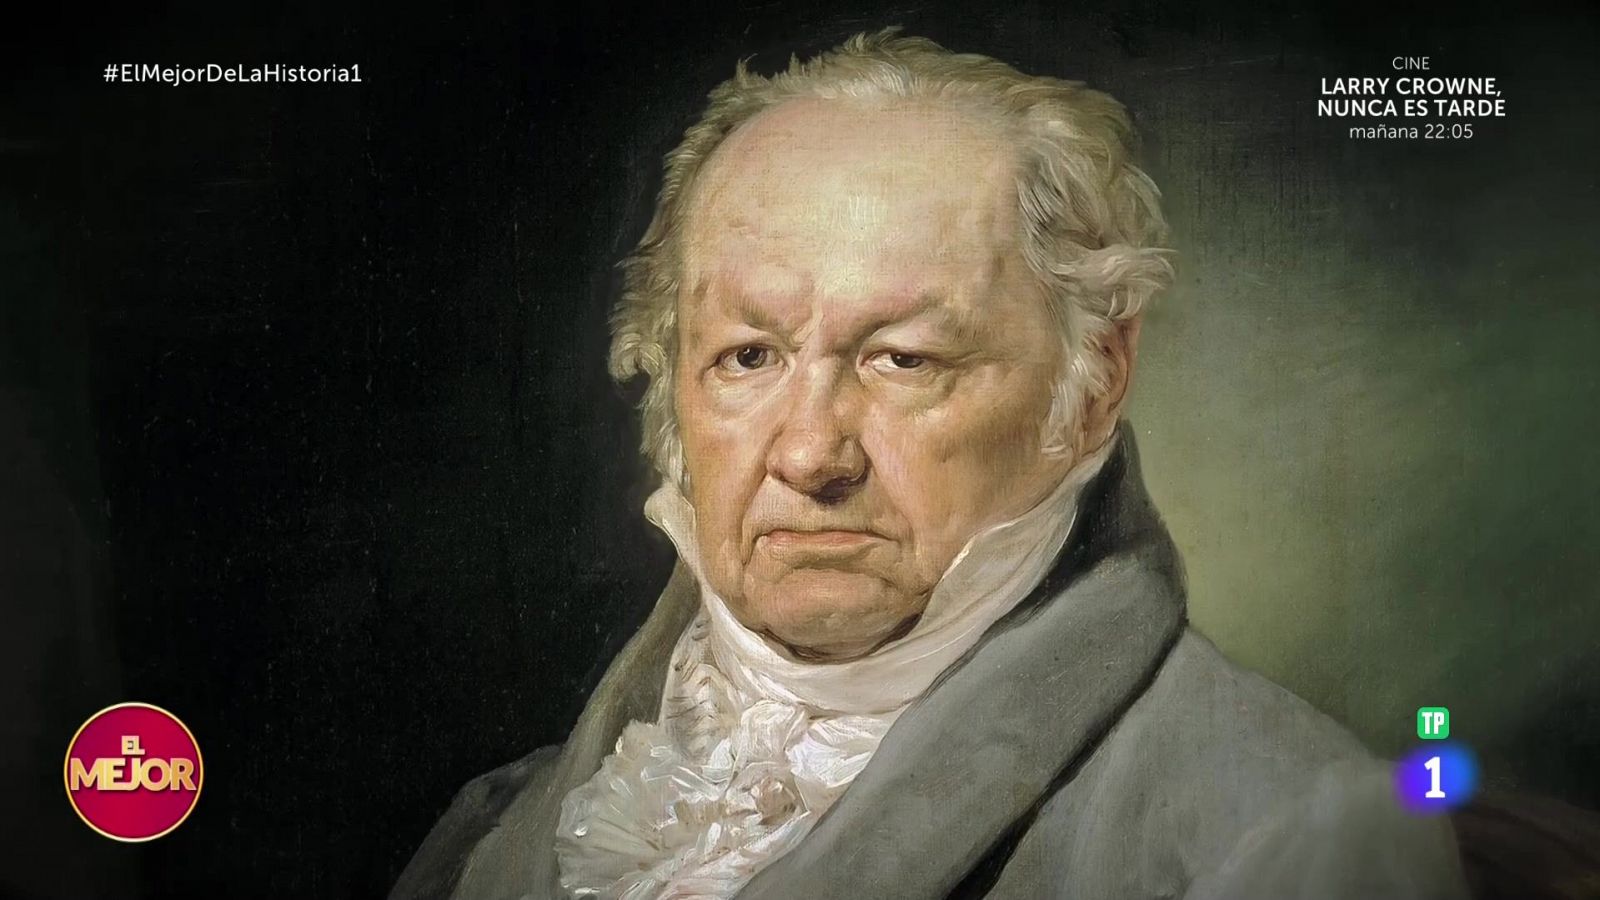 Francisco de Goya, segundo puesto en 'El mejor de la historia 1'